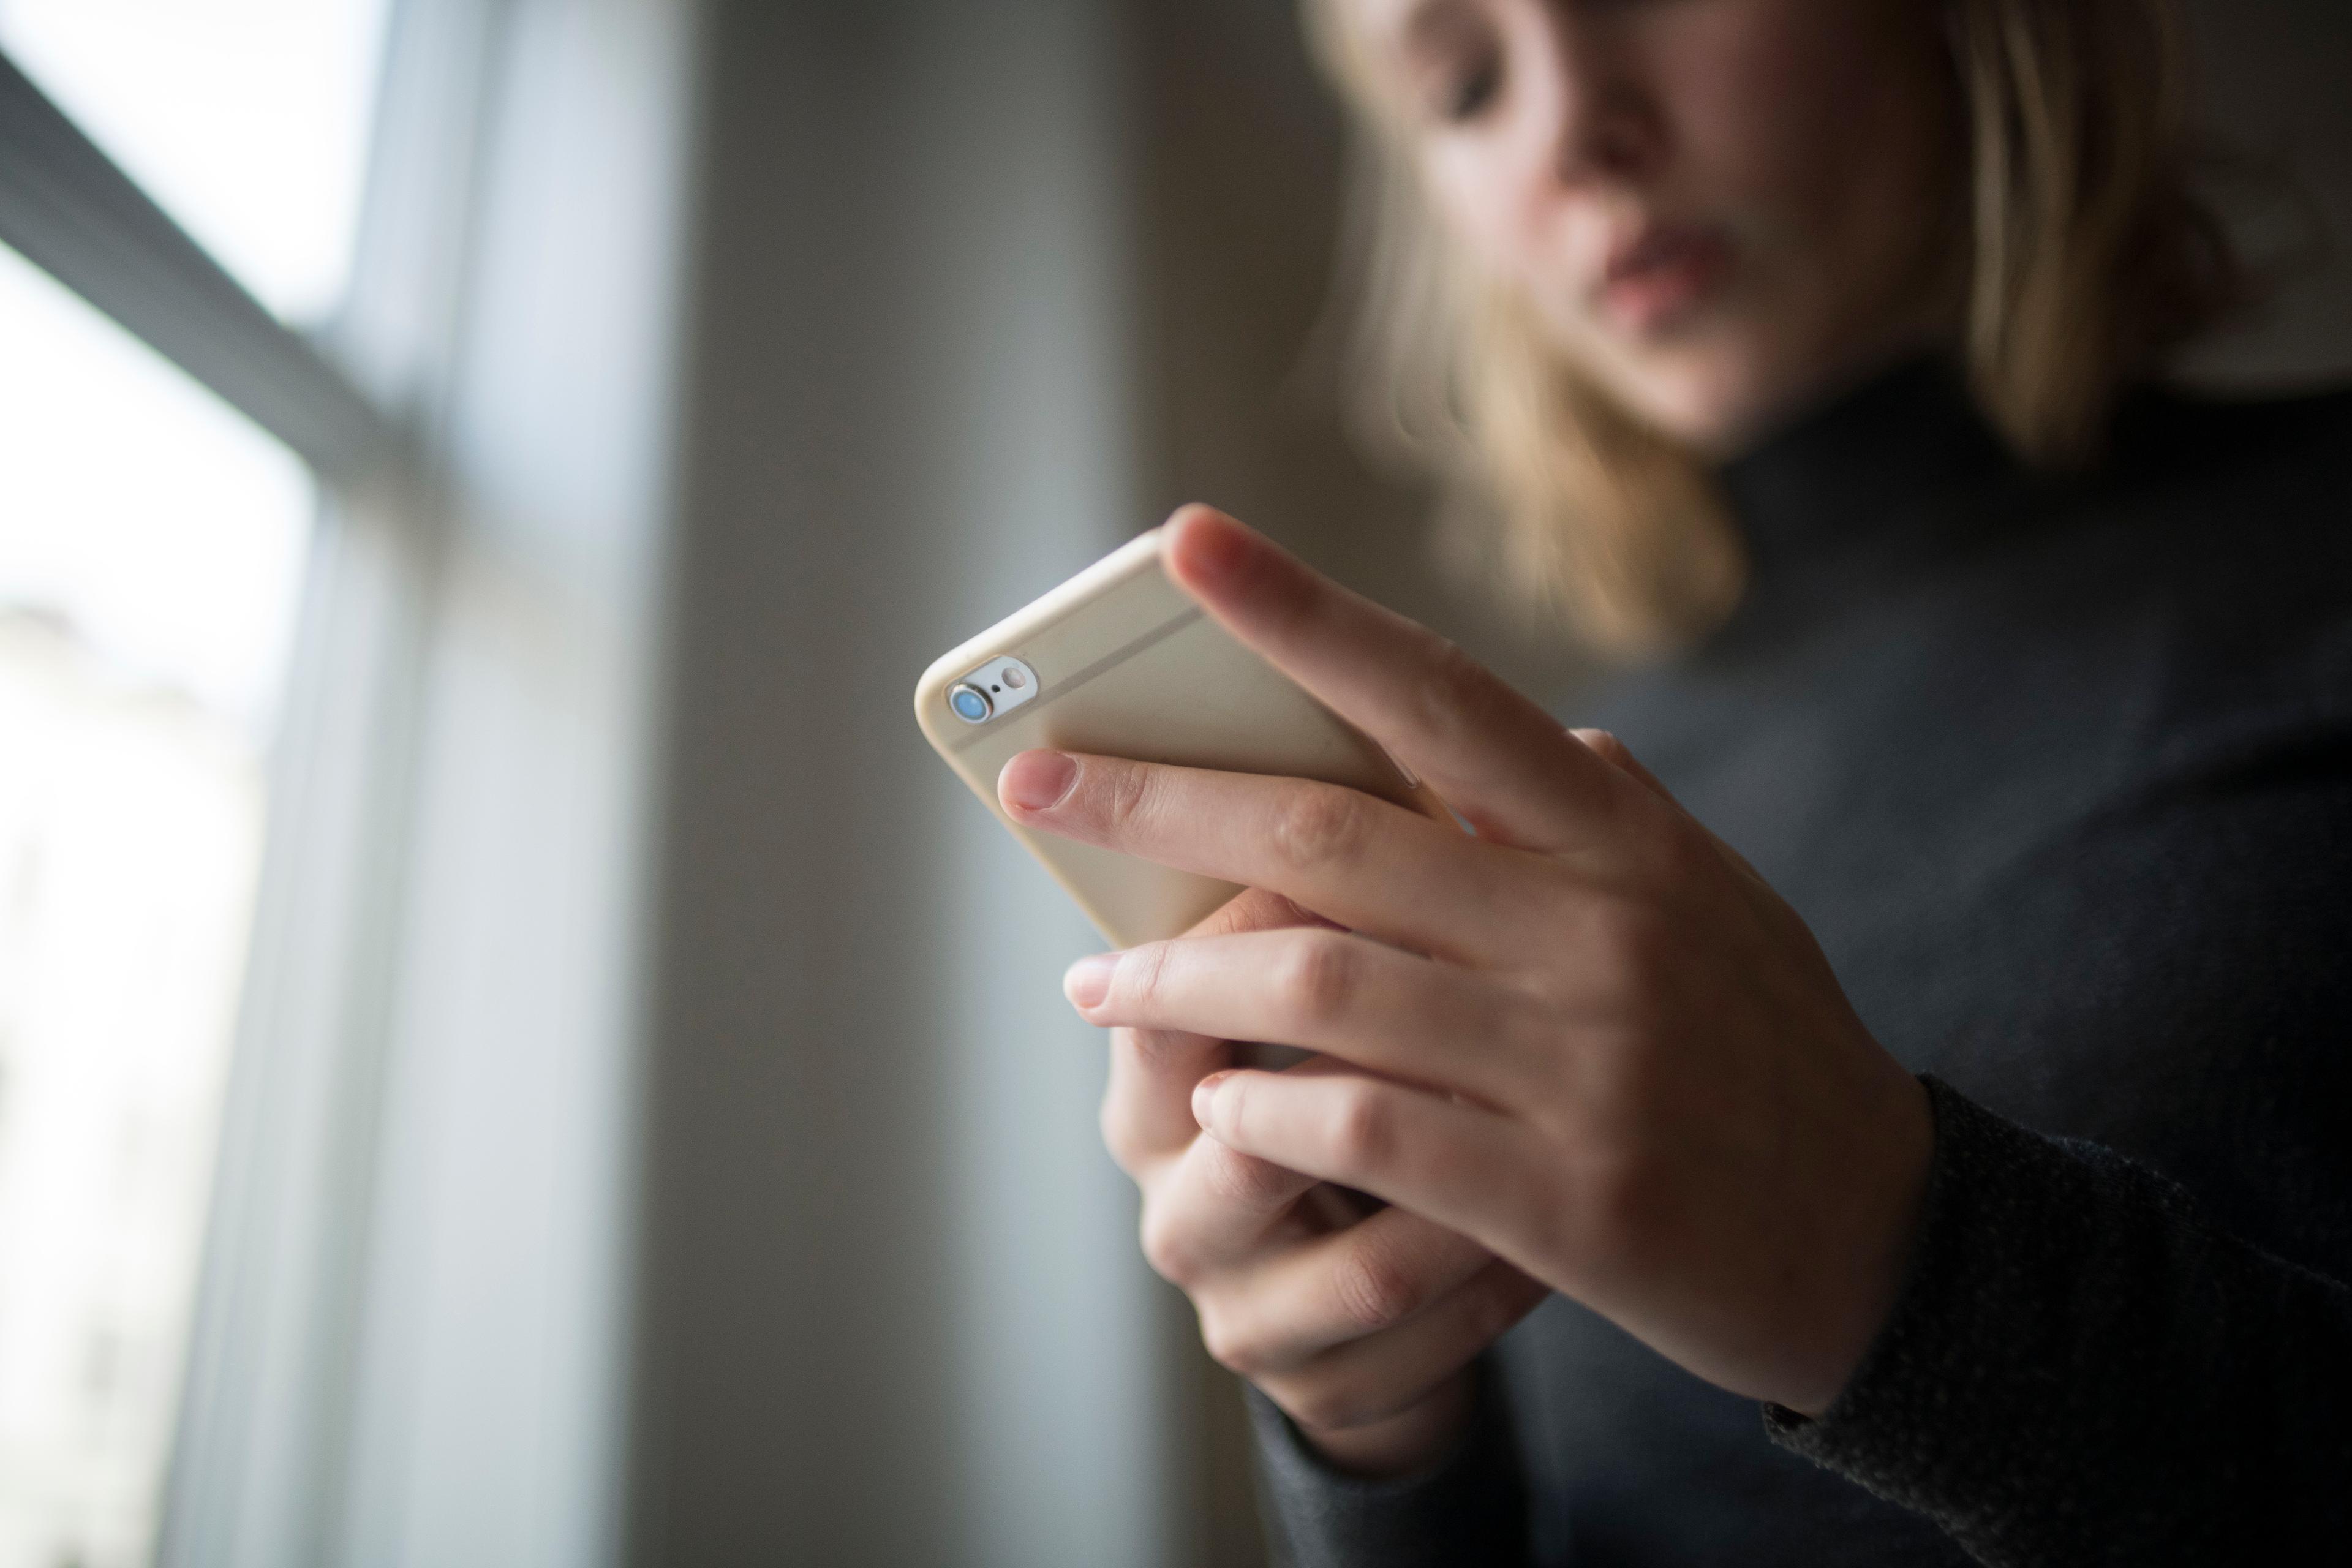 De fire kommuner Tønder, Gentofte, Helsingør og Odense skal i det nye forsøg yde rådgivning over sms til unge med stofproblemer.